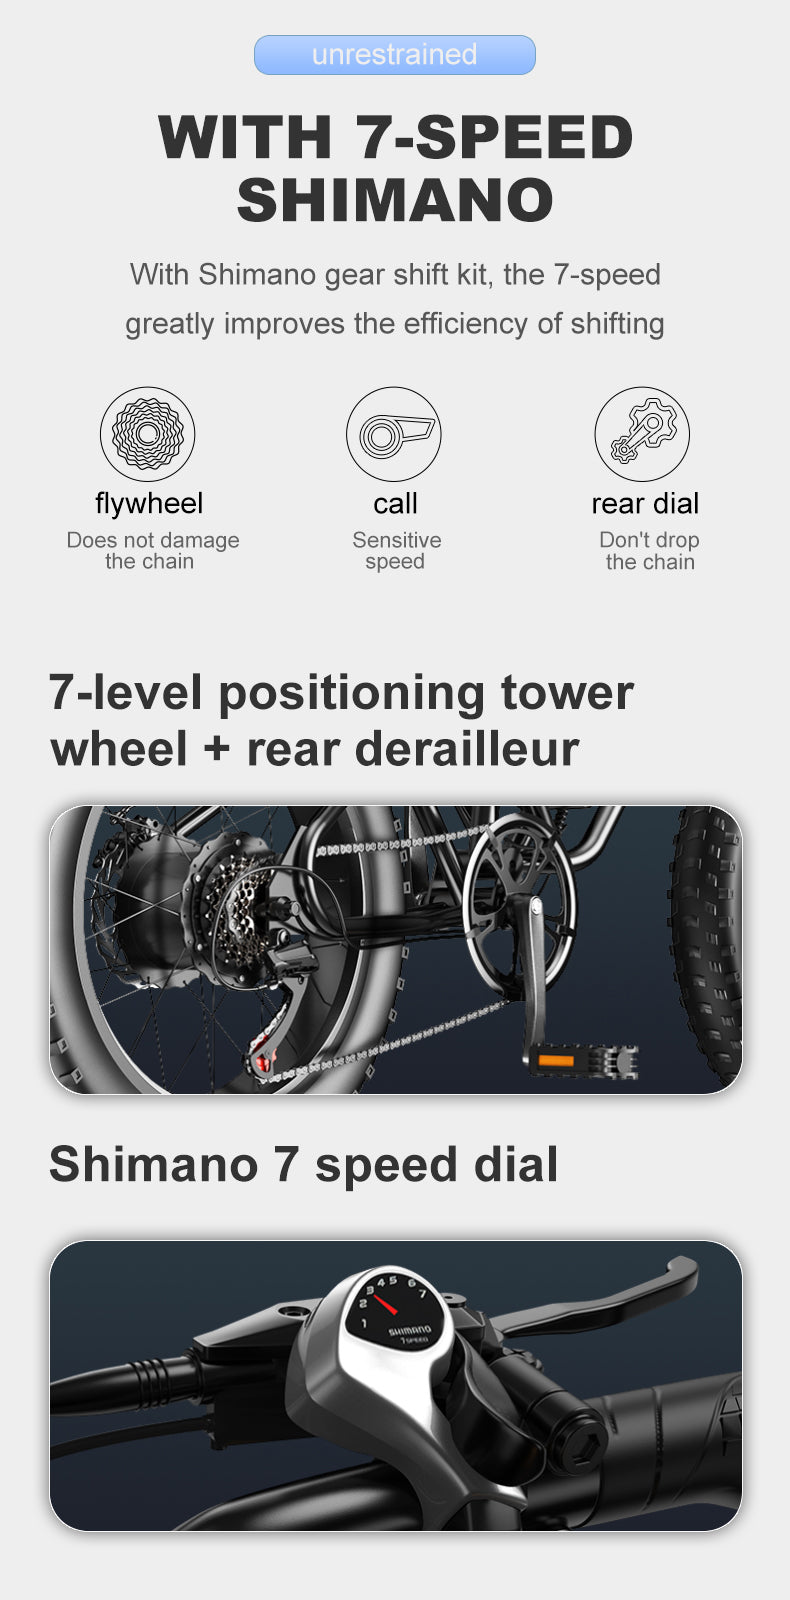 JANSNO X50 Con el kit de cambio de marchas Shimano, la velocidad de 7 mejora en gran medida la eficiencia del cambio de rueda torre de posicionamiento de 7 niveles + desviador trasero